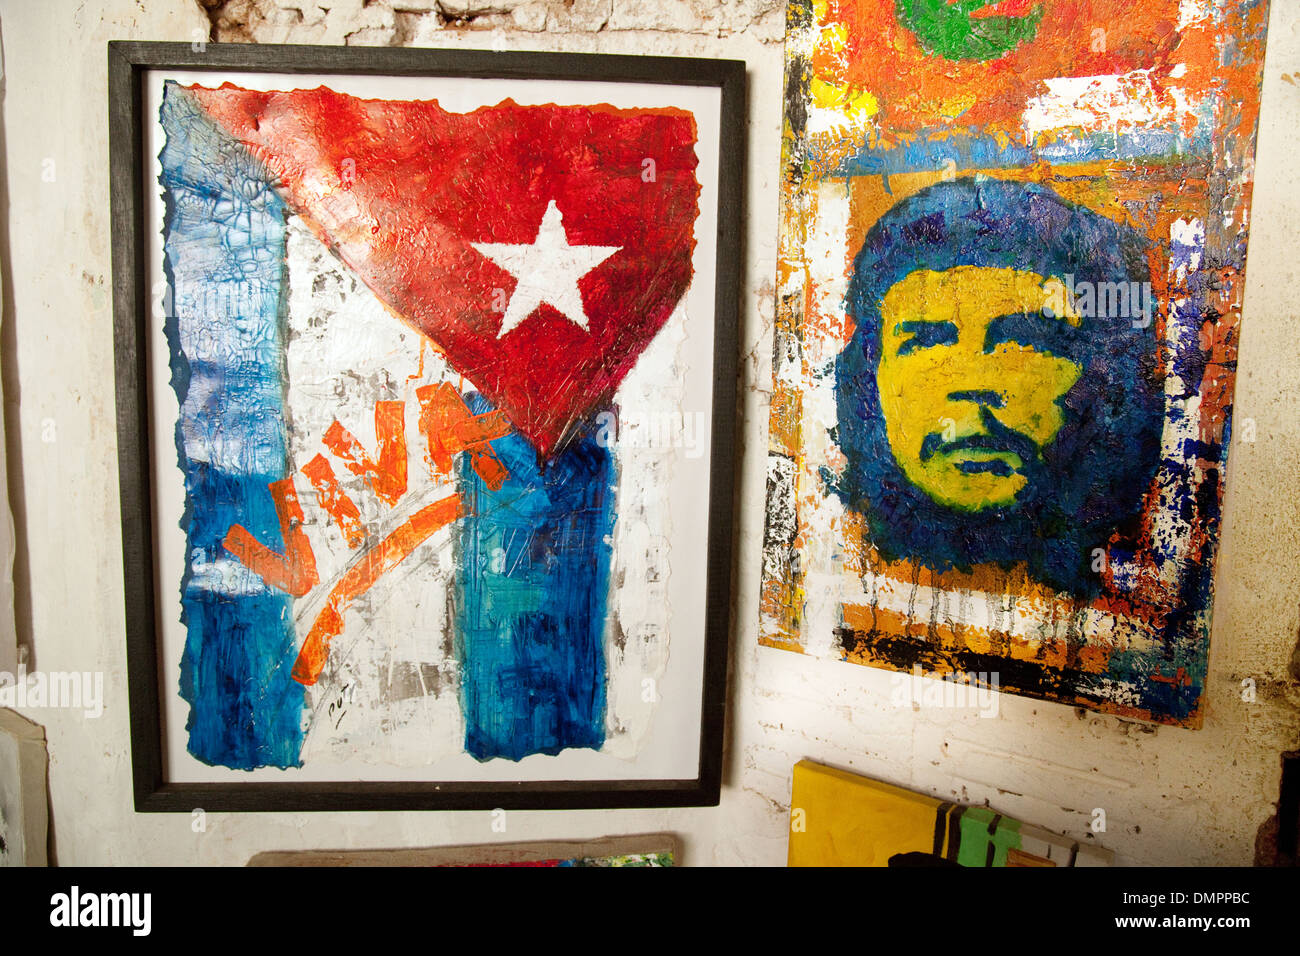 Bilder von der Revolution zeigt eine kubanische Flagge und Che Guevara, Trinidad, Kuba, Karibik, Lateinamerika Stockfoto